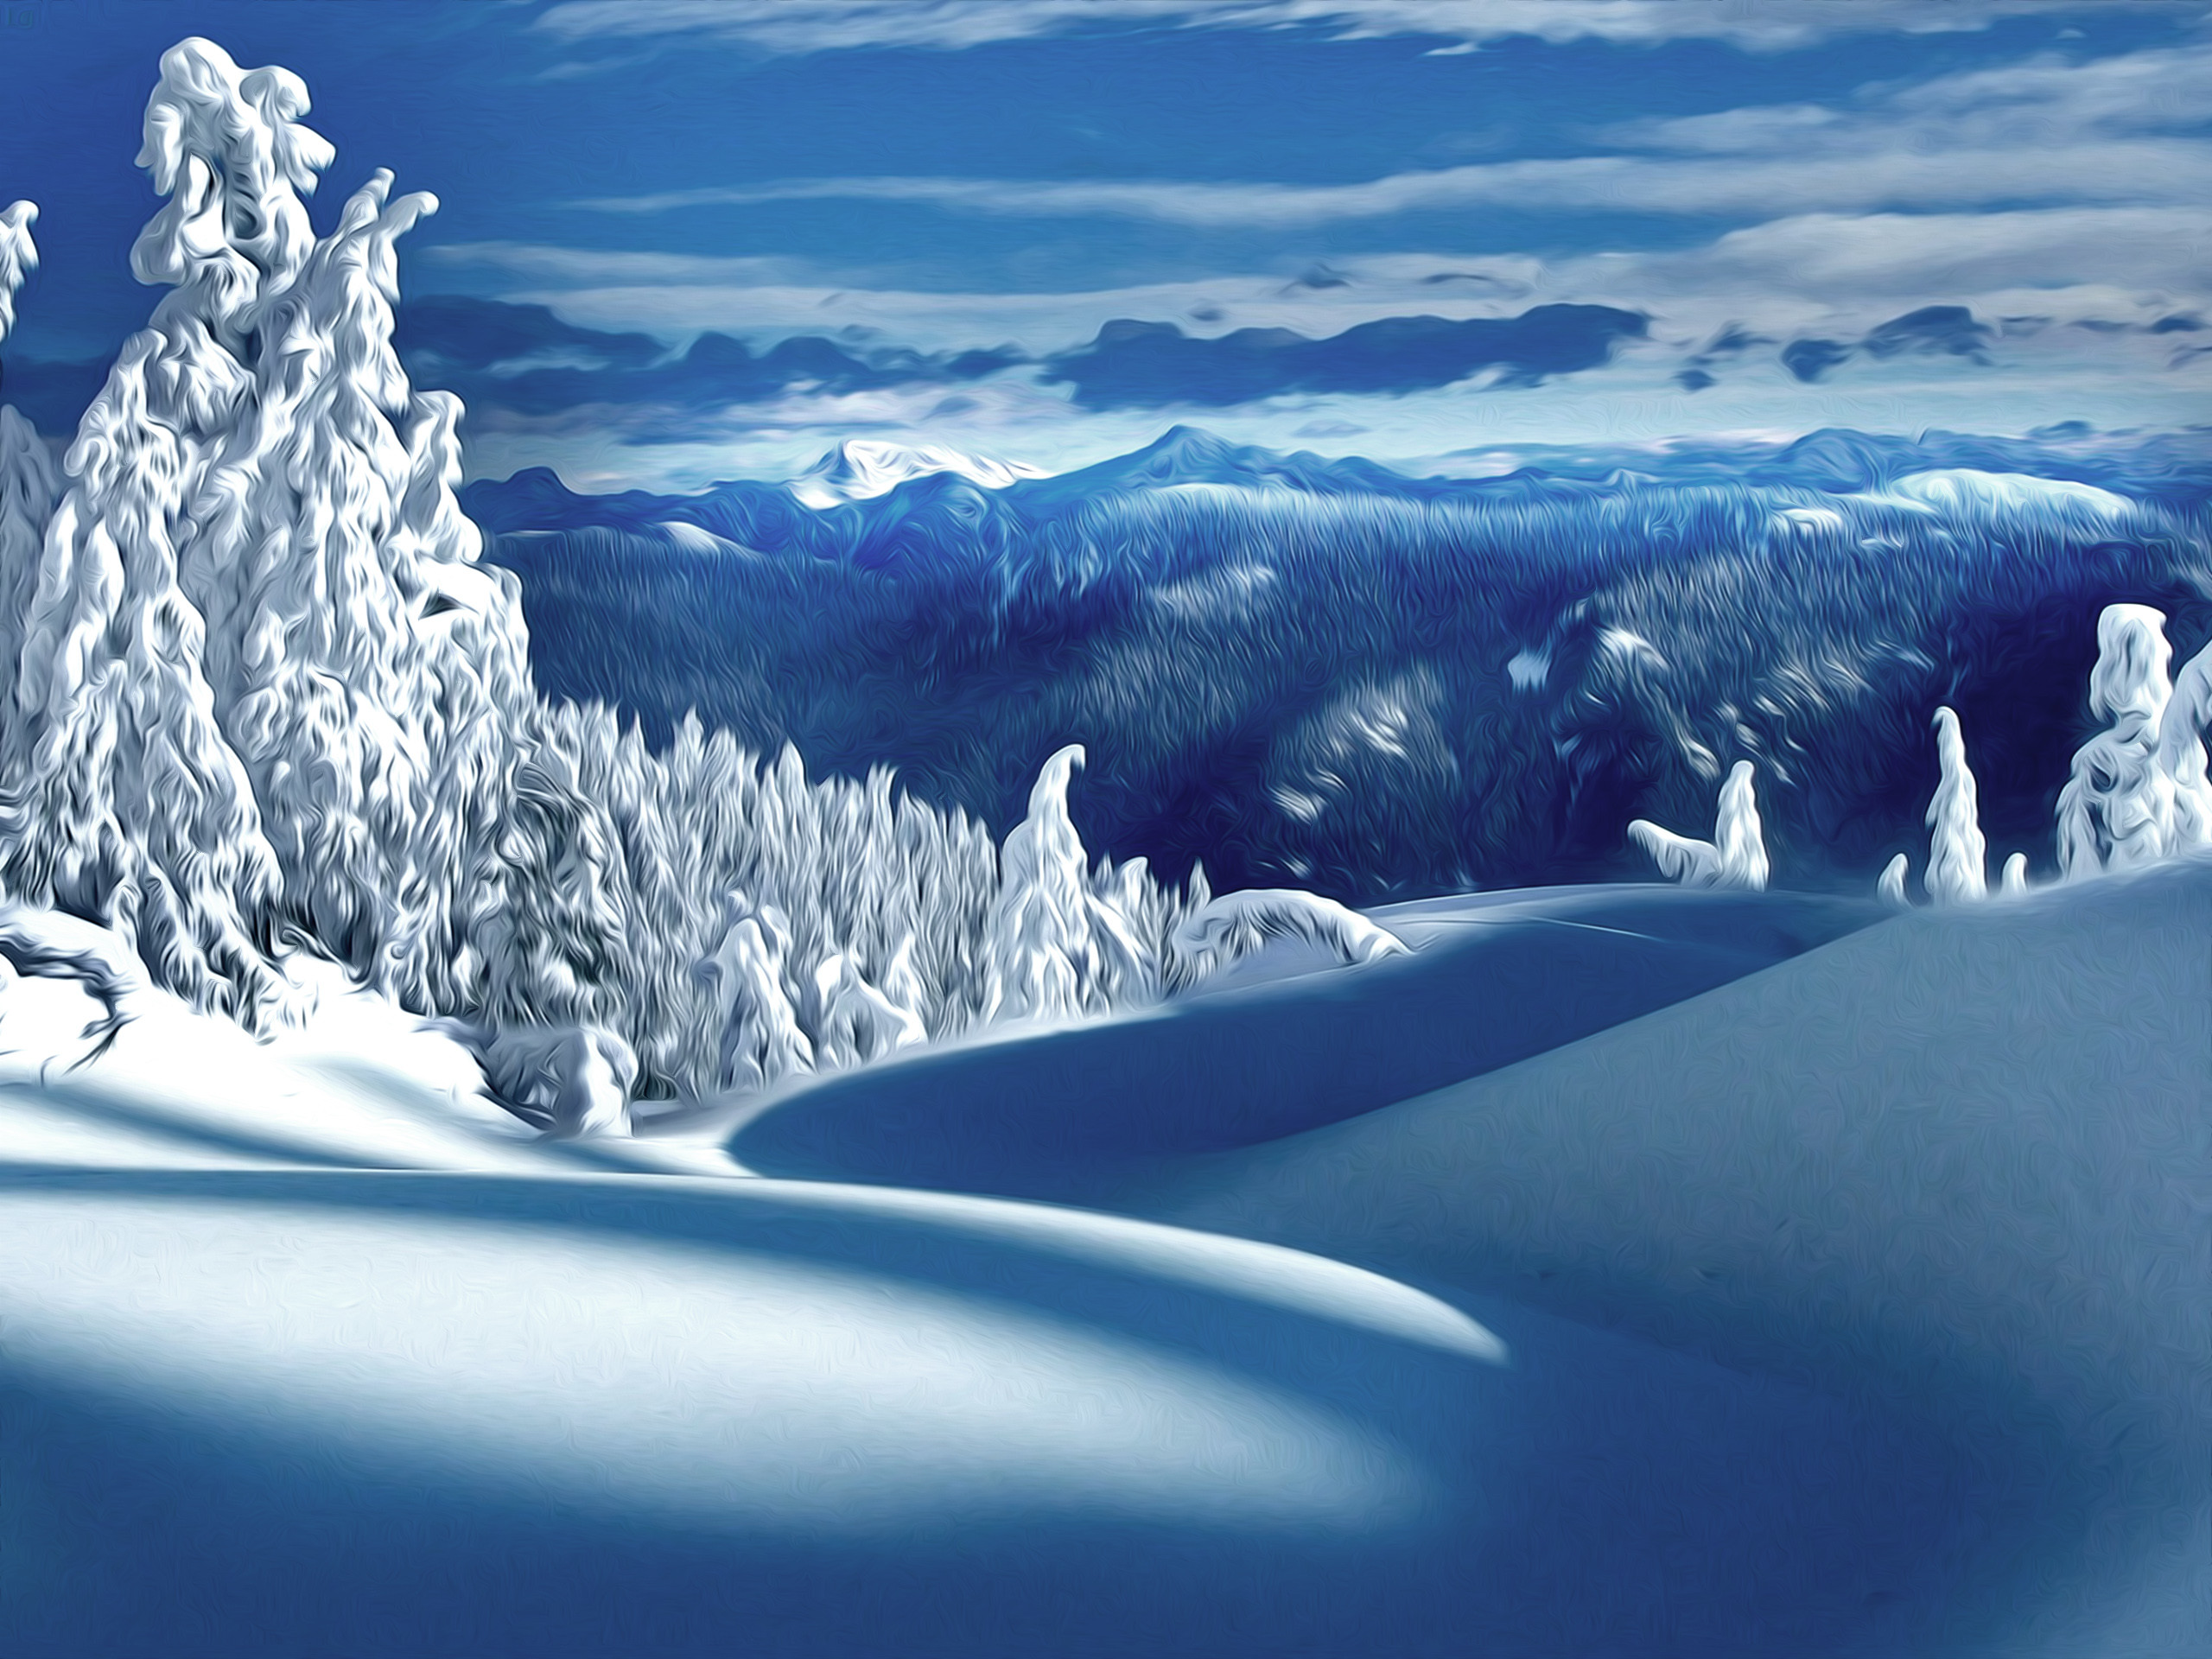 2560x1920, Winter Nature Snow Scene - Nature Winter Scene - HD Wallpaper 